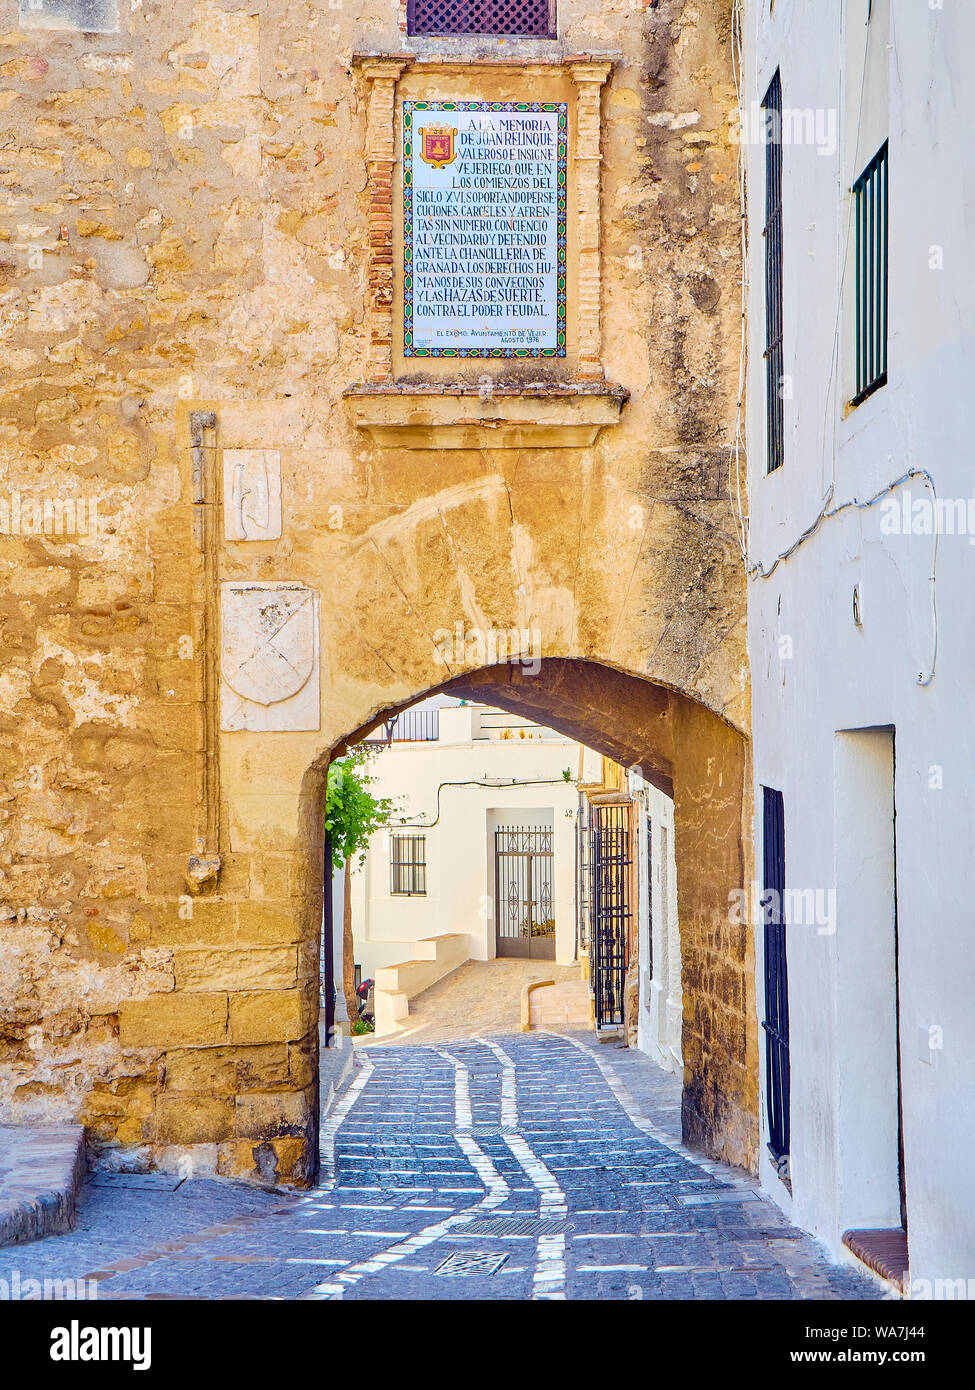 Bogen von La Segur, Arco de La Segur, in der Marques de Tamaron Straße. Vejer de la Frontera Stadtzentrum. Provinz Cadiz, Andalusien, Spanien. Stockfoto